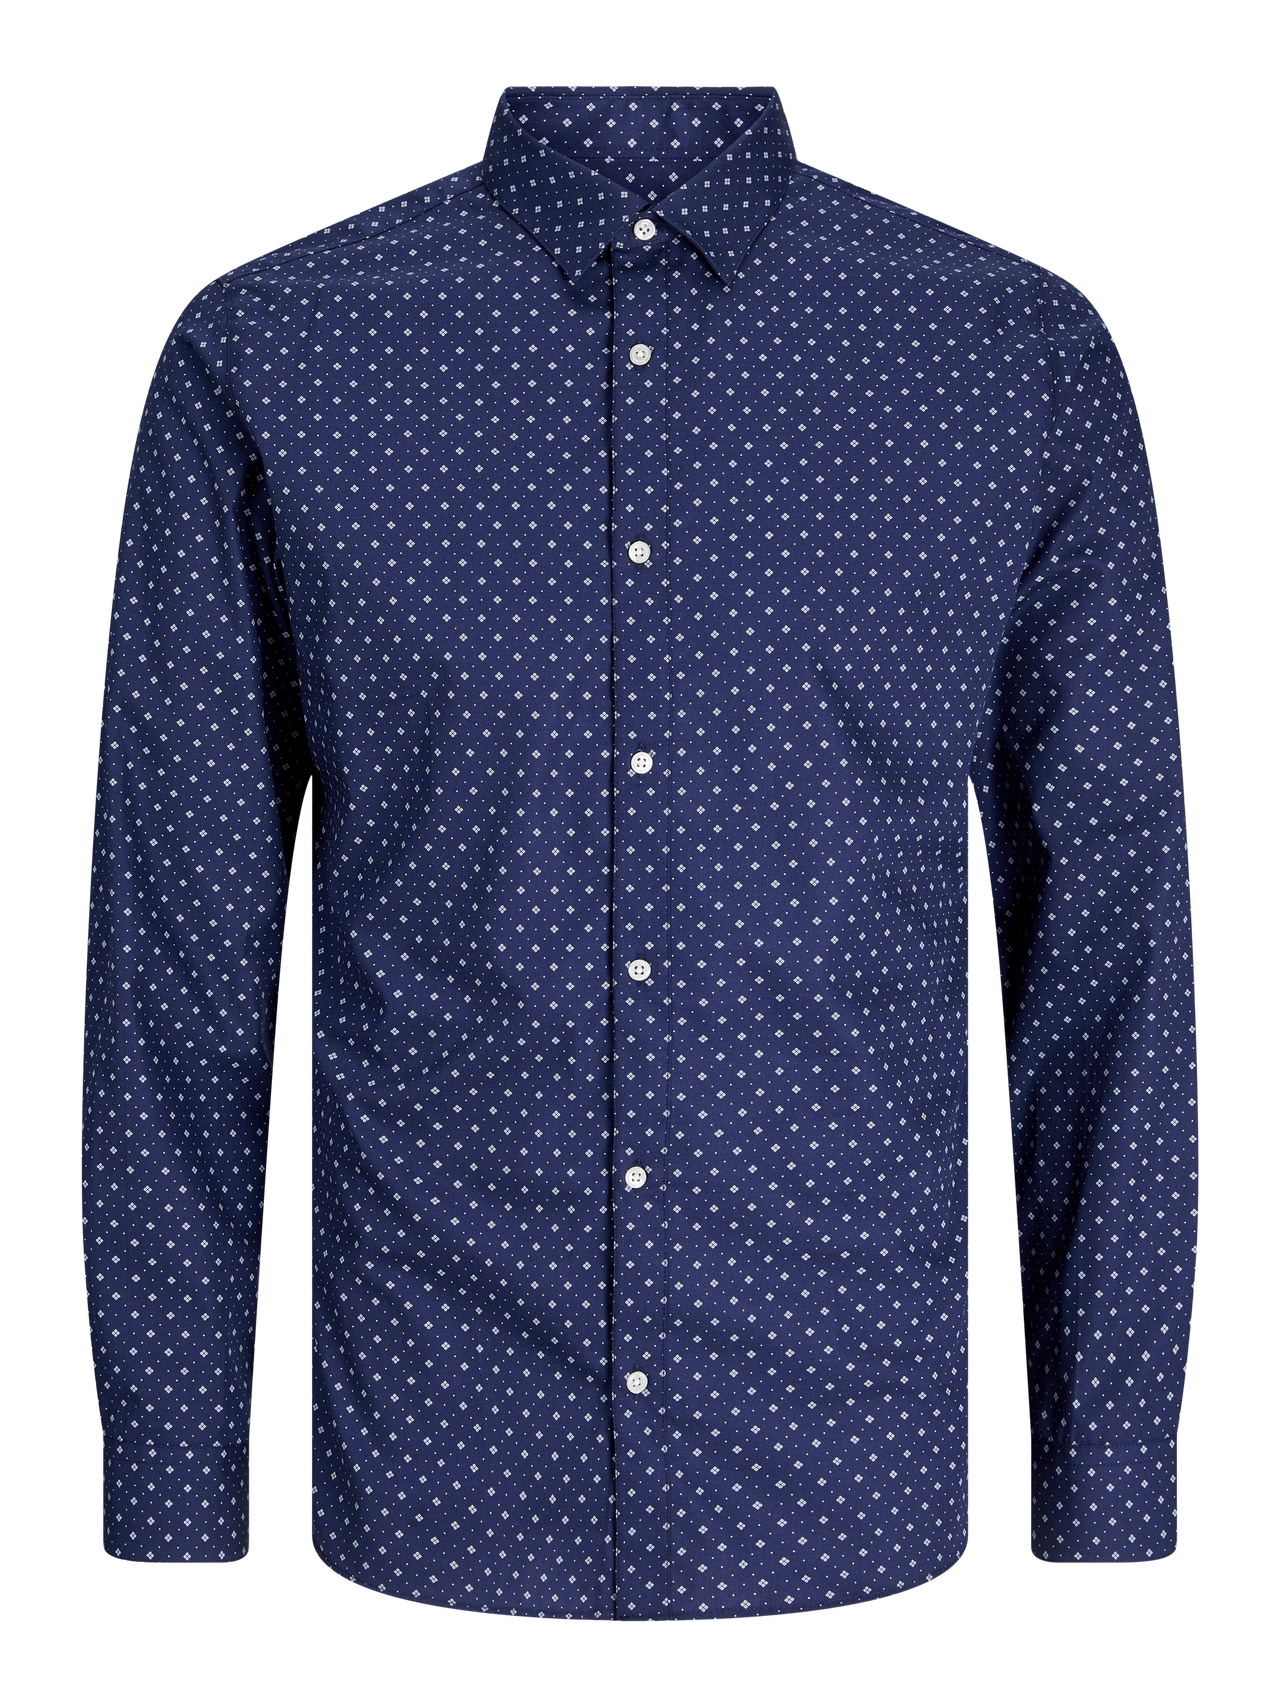 Jack & Jones Slim Fit Marškiniai -Navy Blazer - 12260131